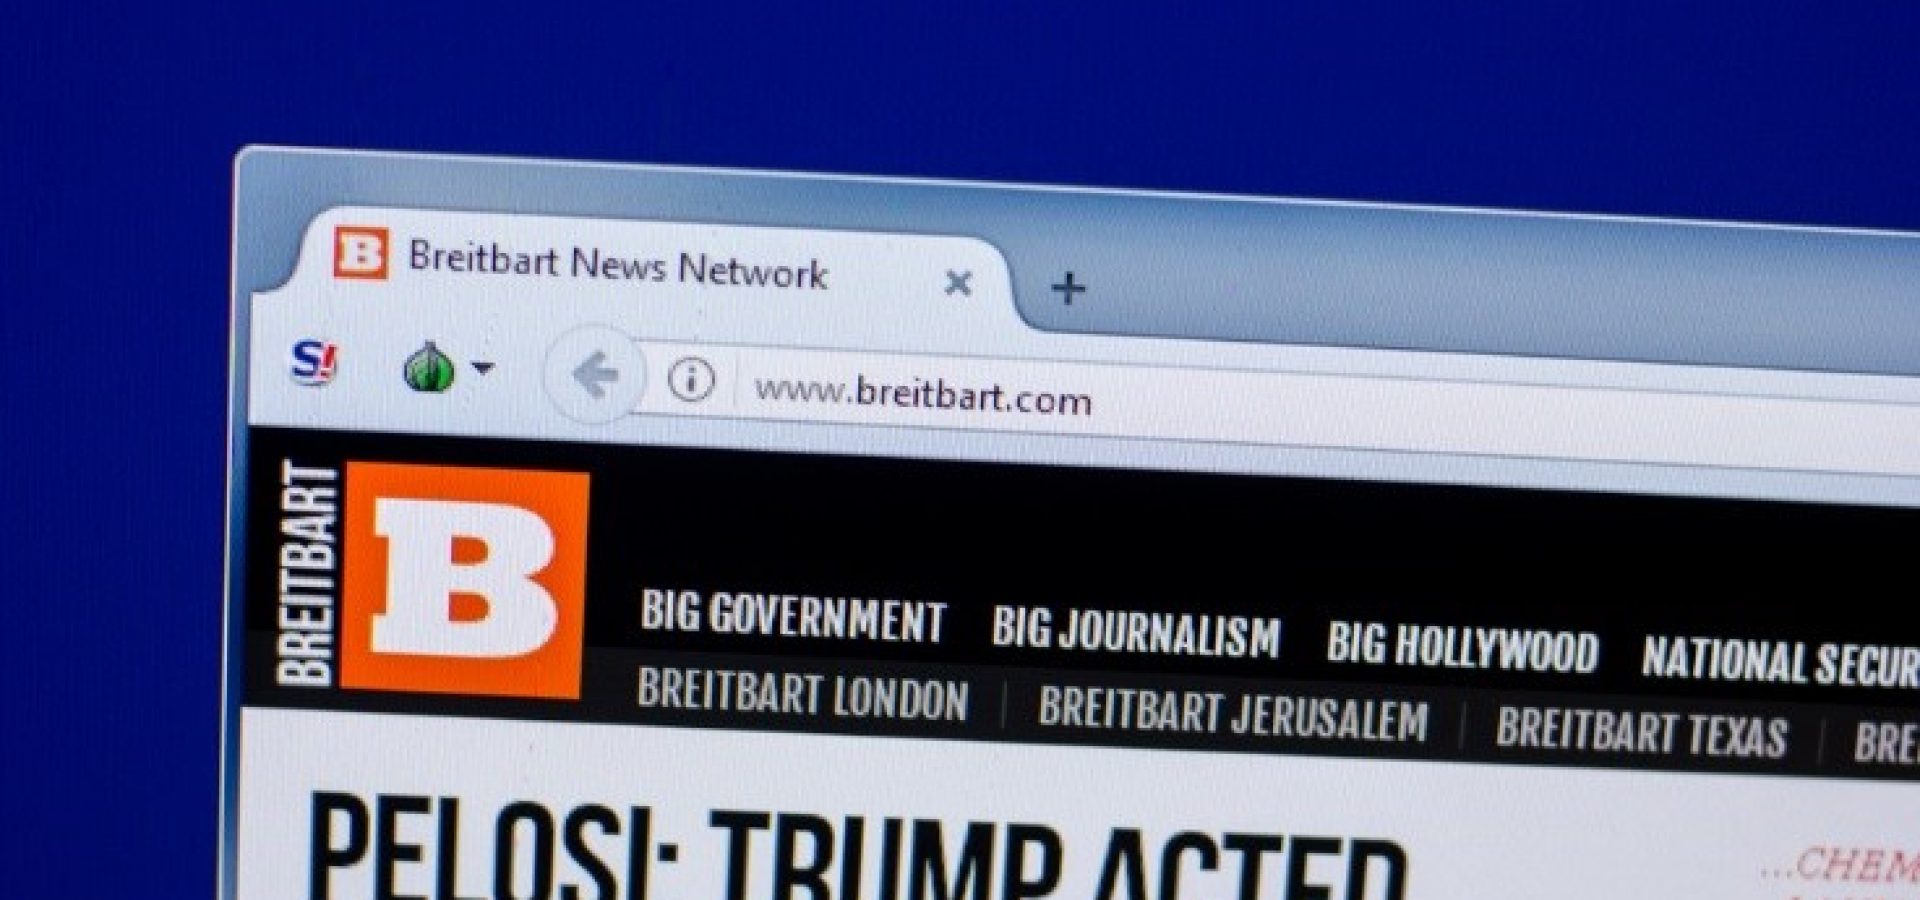 Breitbart news website – wibestbroker